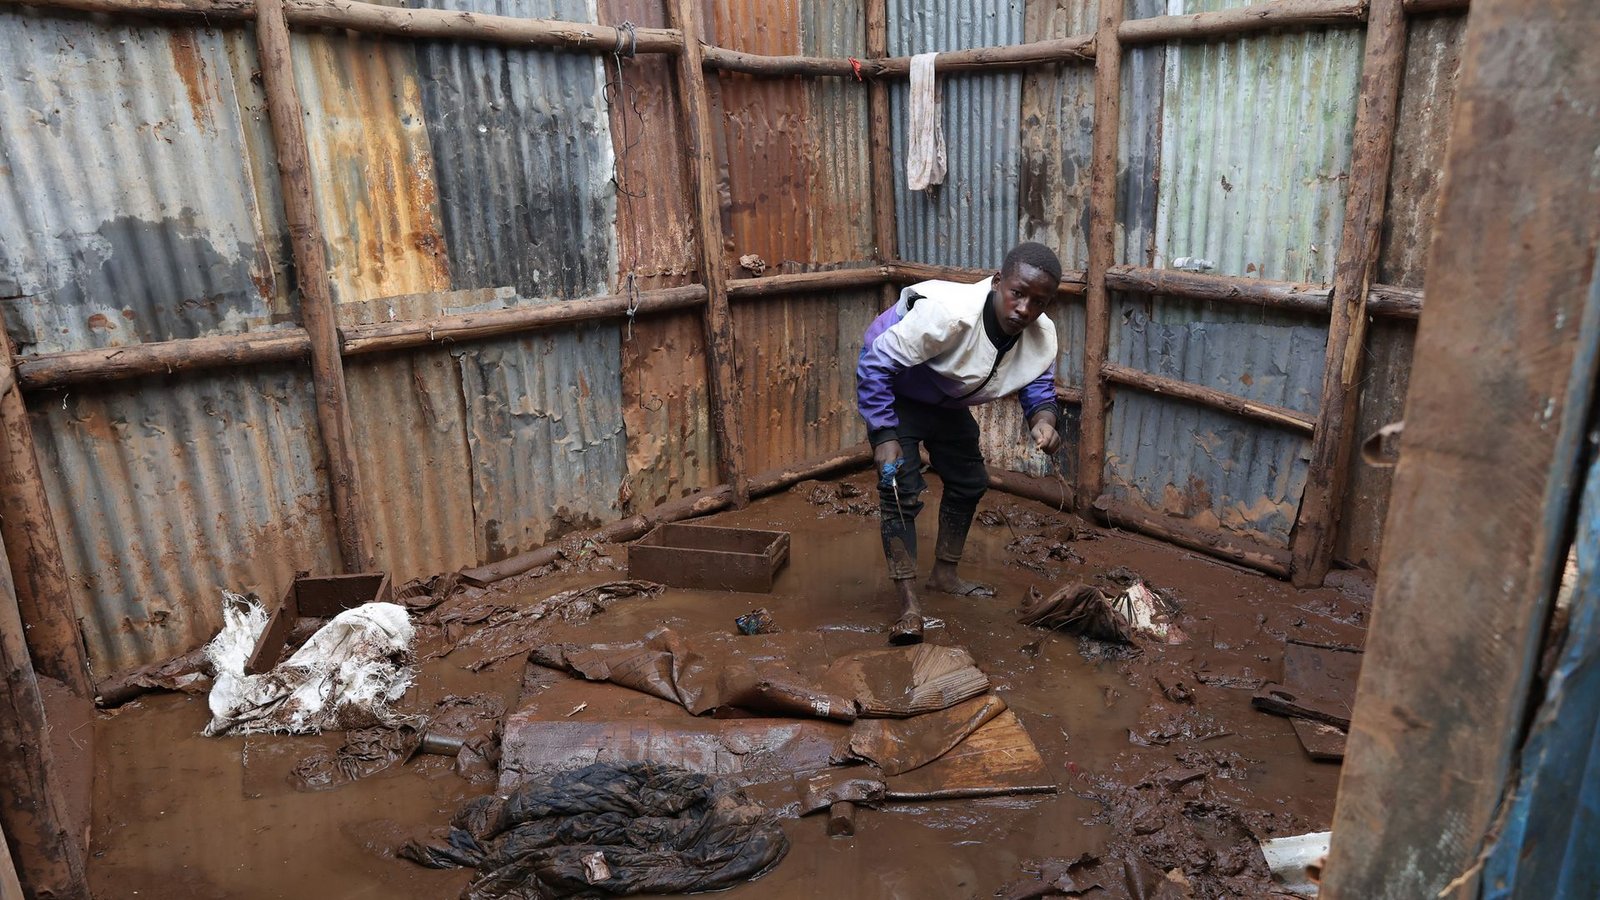 Kenia: Ein Bewohner des Mathare-Slums sammelt Gegenstände aus dem Schlamm ein, bevor er in eine Notunterkunft evakuiert wird.Foto: John Okoyo/XinHua/dpa